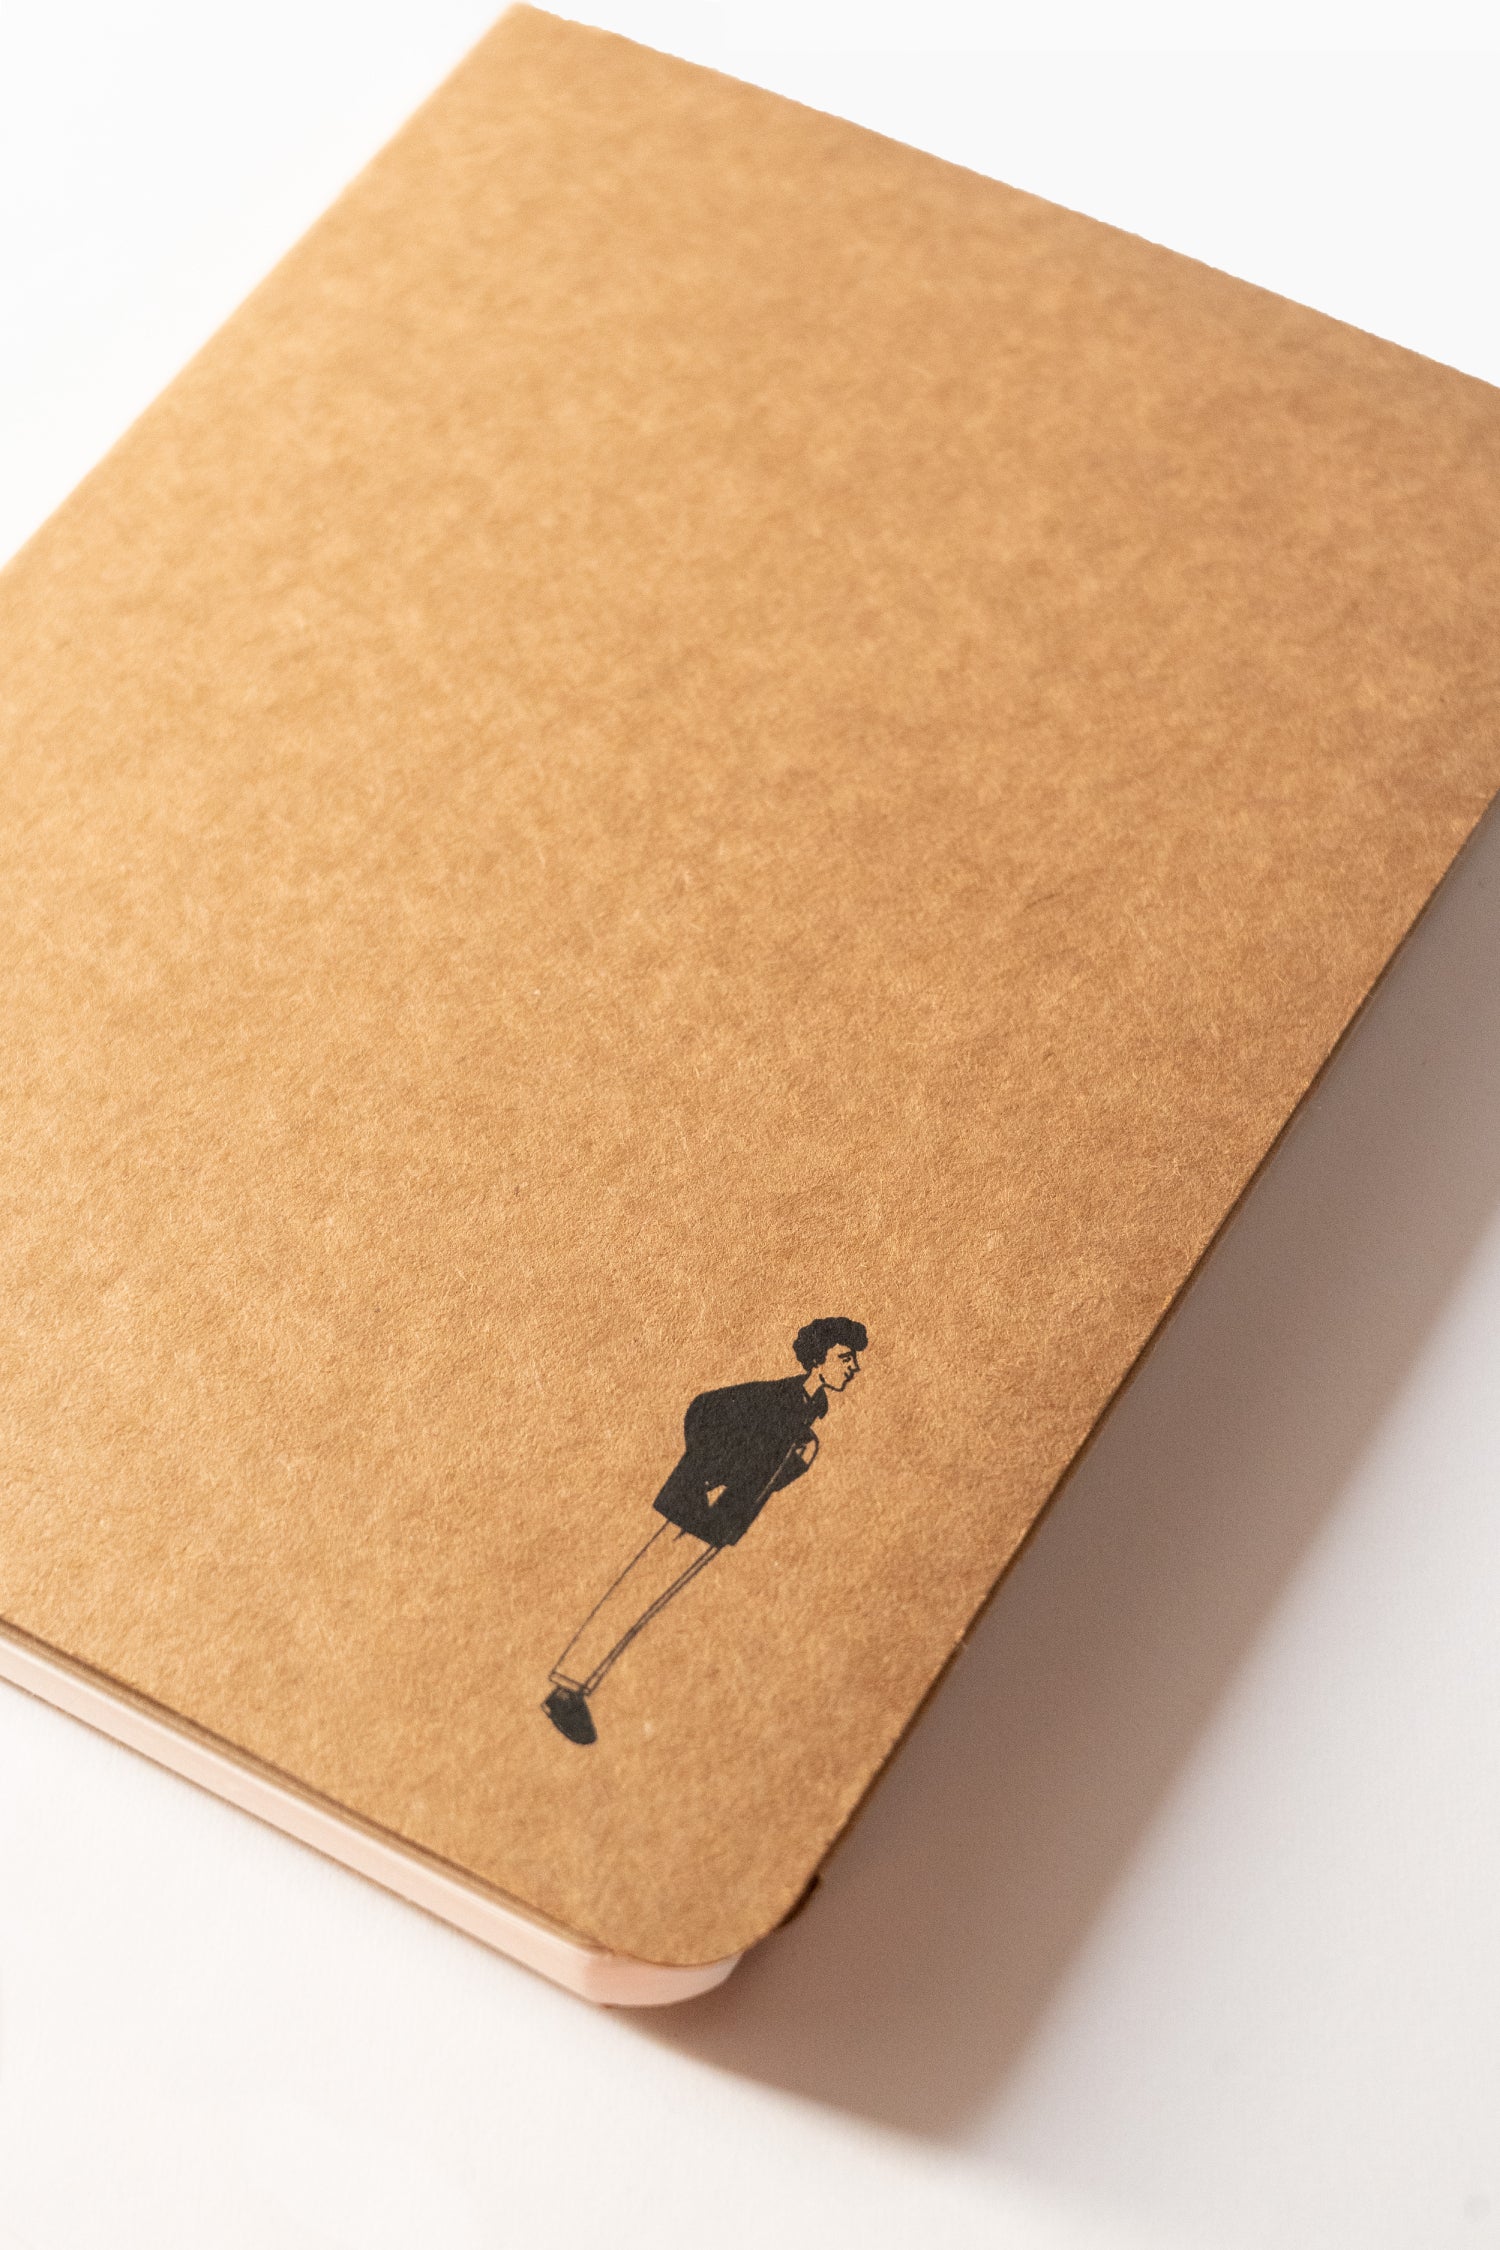 Plain Pattern Kraft Box Gift Hamper - Brown Packing Box